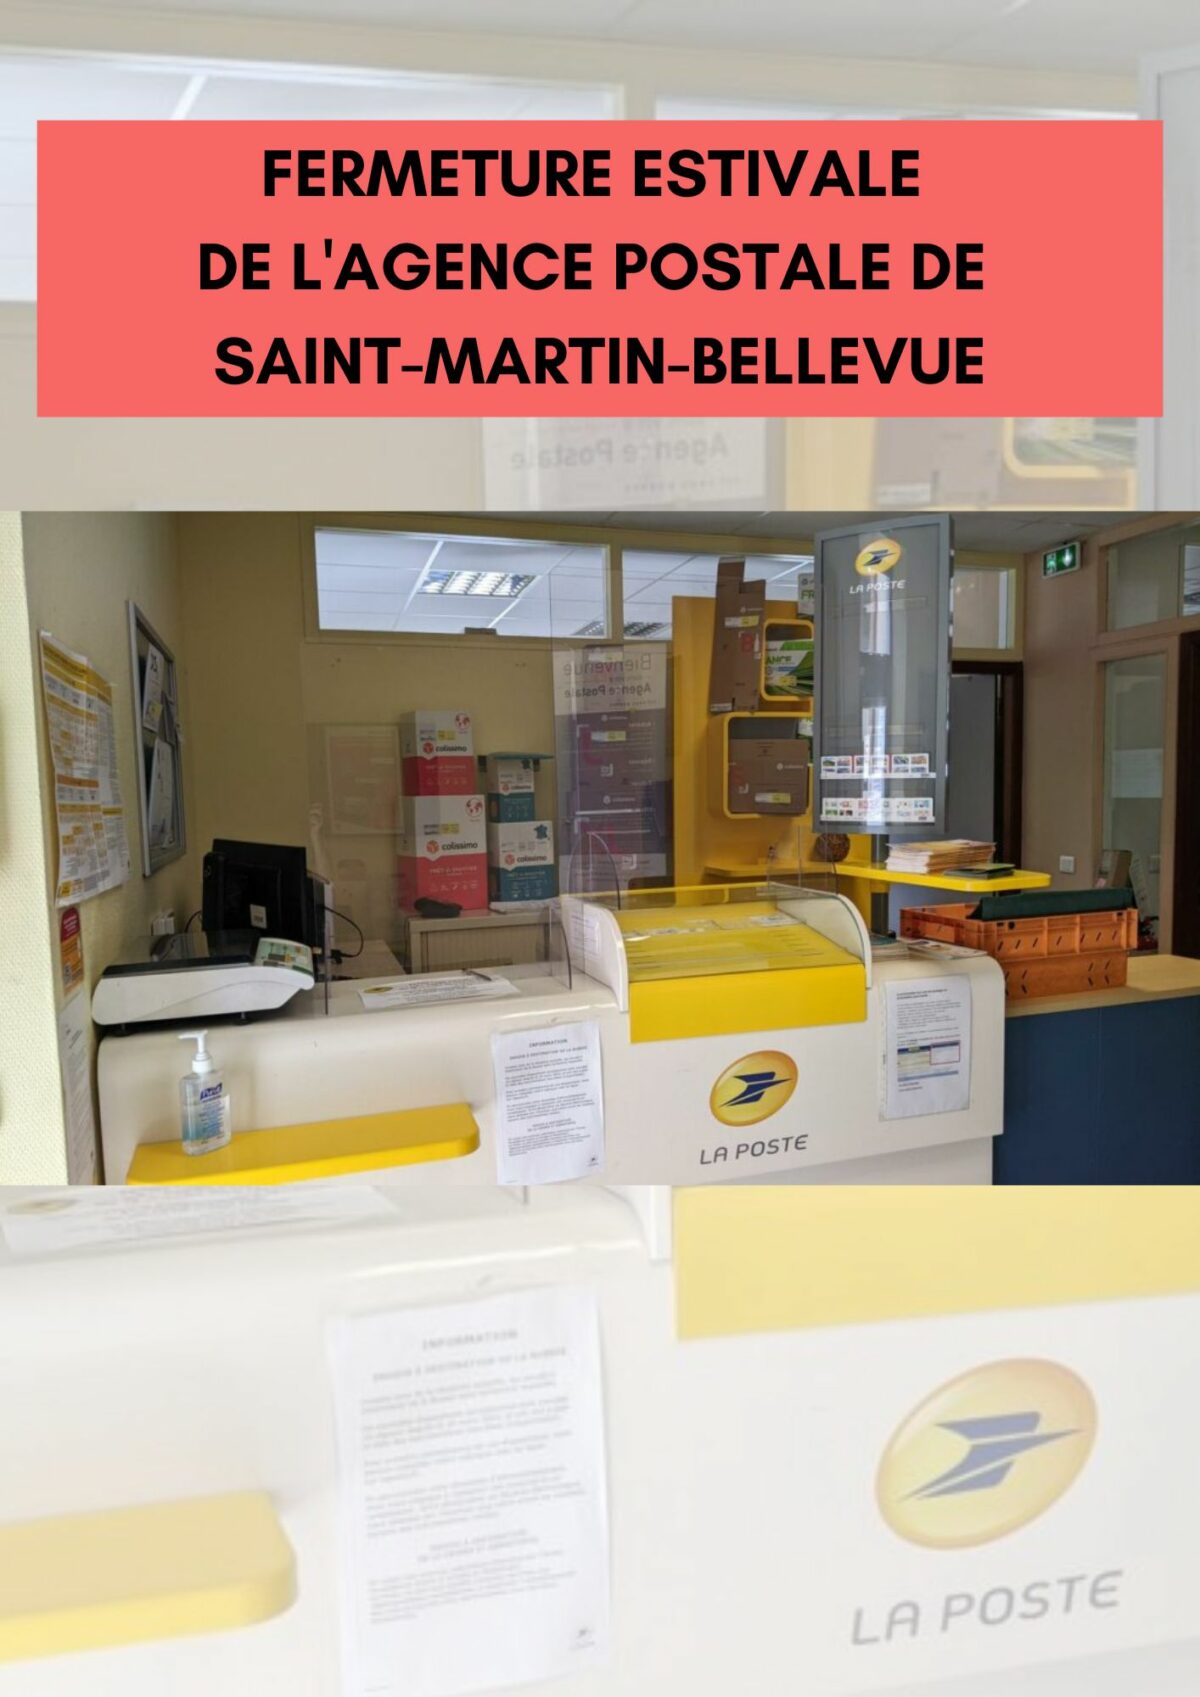 Fermeture estivale de l’Agence postale de Saint-Martin-Bellevue